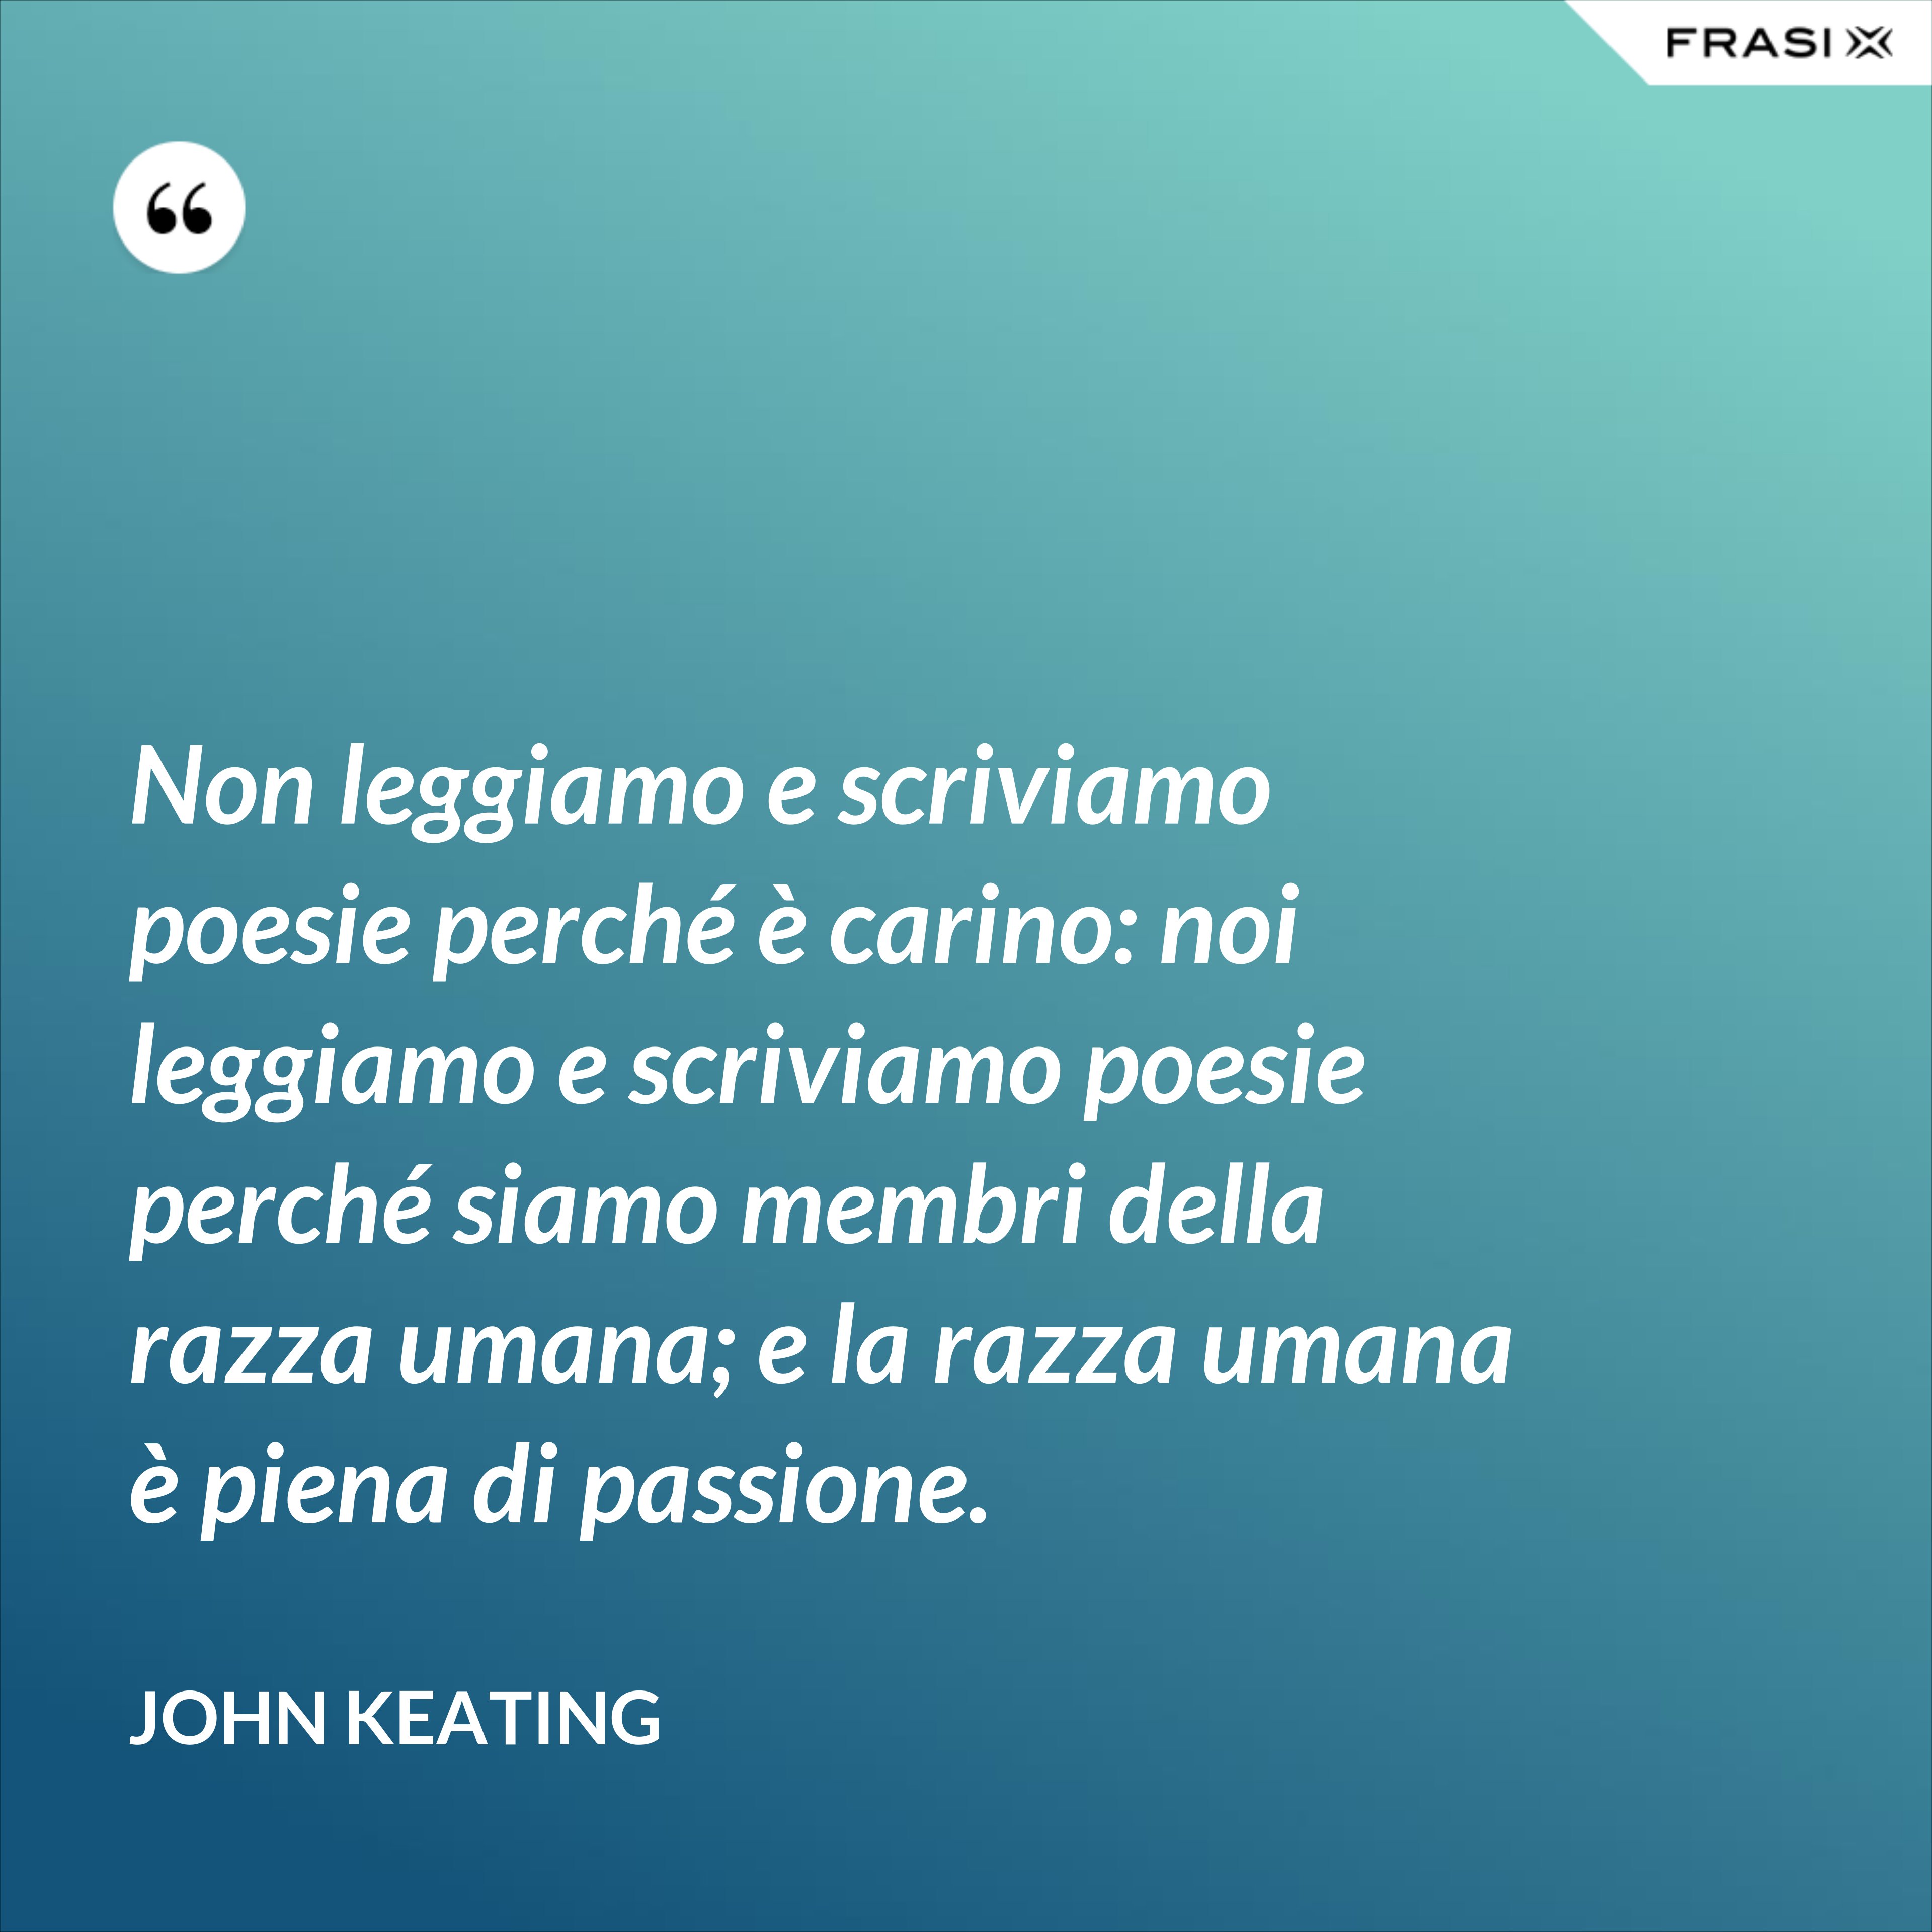 Non leggiamo e scriviamo poesie perché è carino: noi leggiamo e scriviamo poesie perché siamo membri della razza umana; e la razza umana è piena di passione. - John Keating